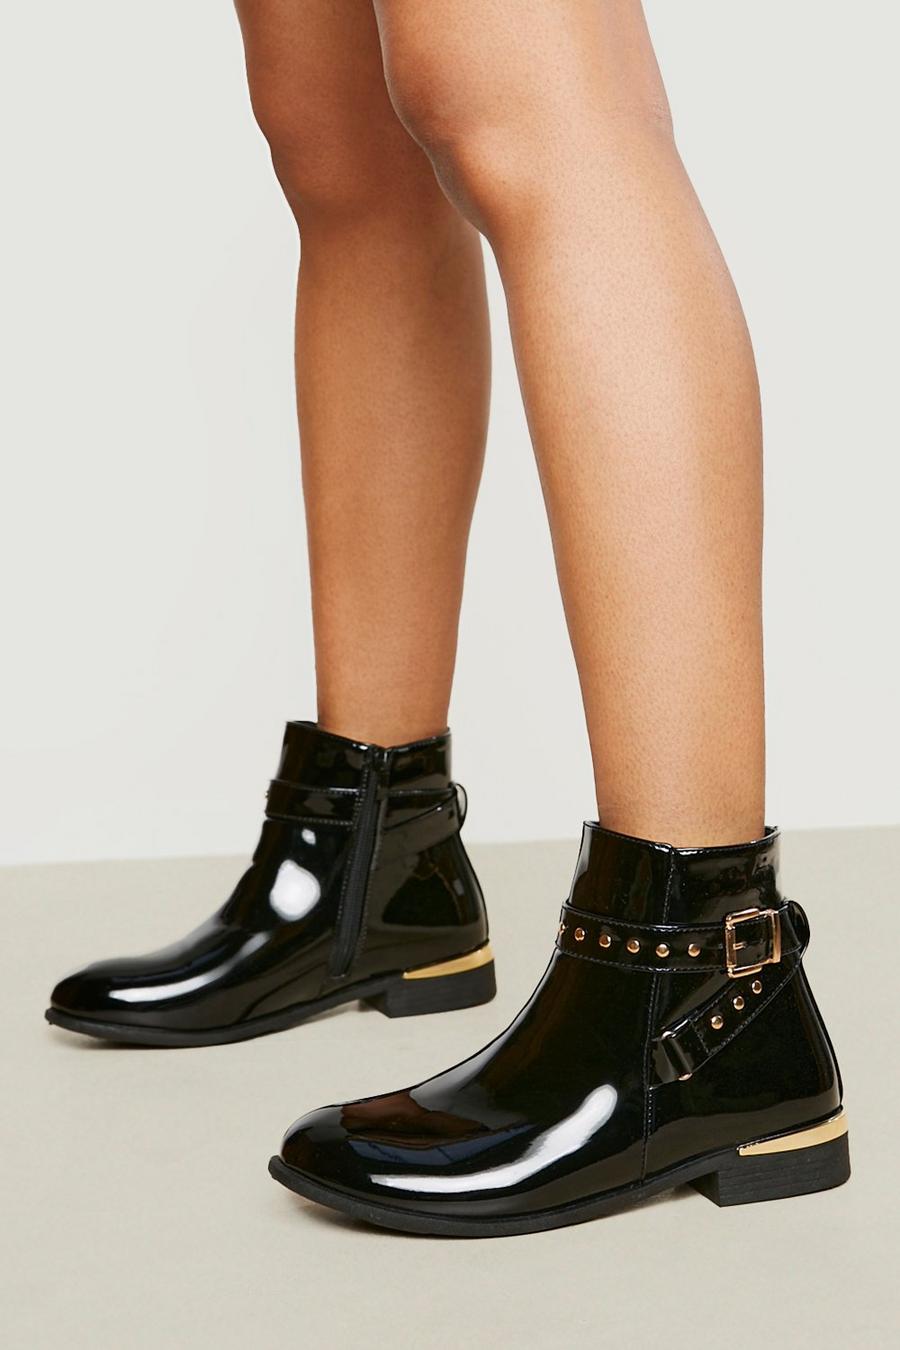 Zara Chelsea Boot noir-argent\u00e9 style d\u00e9contract\u00e9 Chaussures Bottes Chelsea Boots 